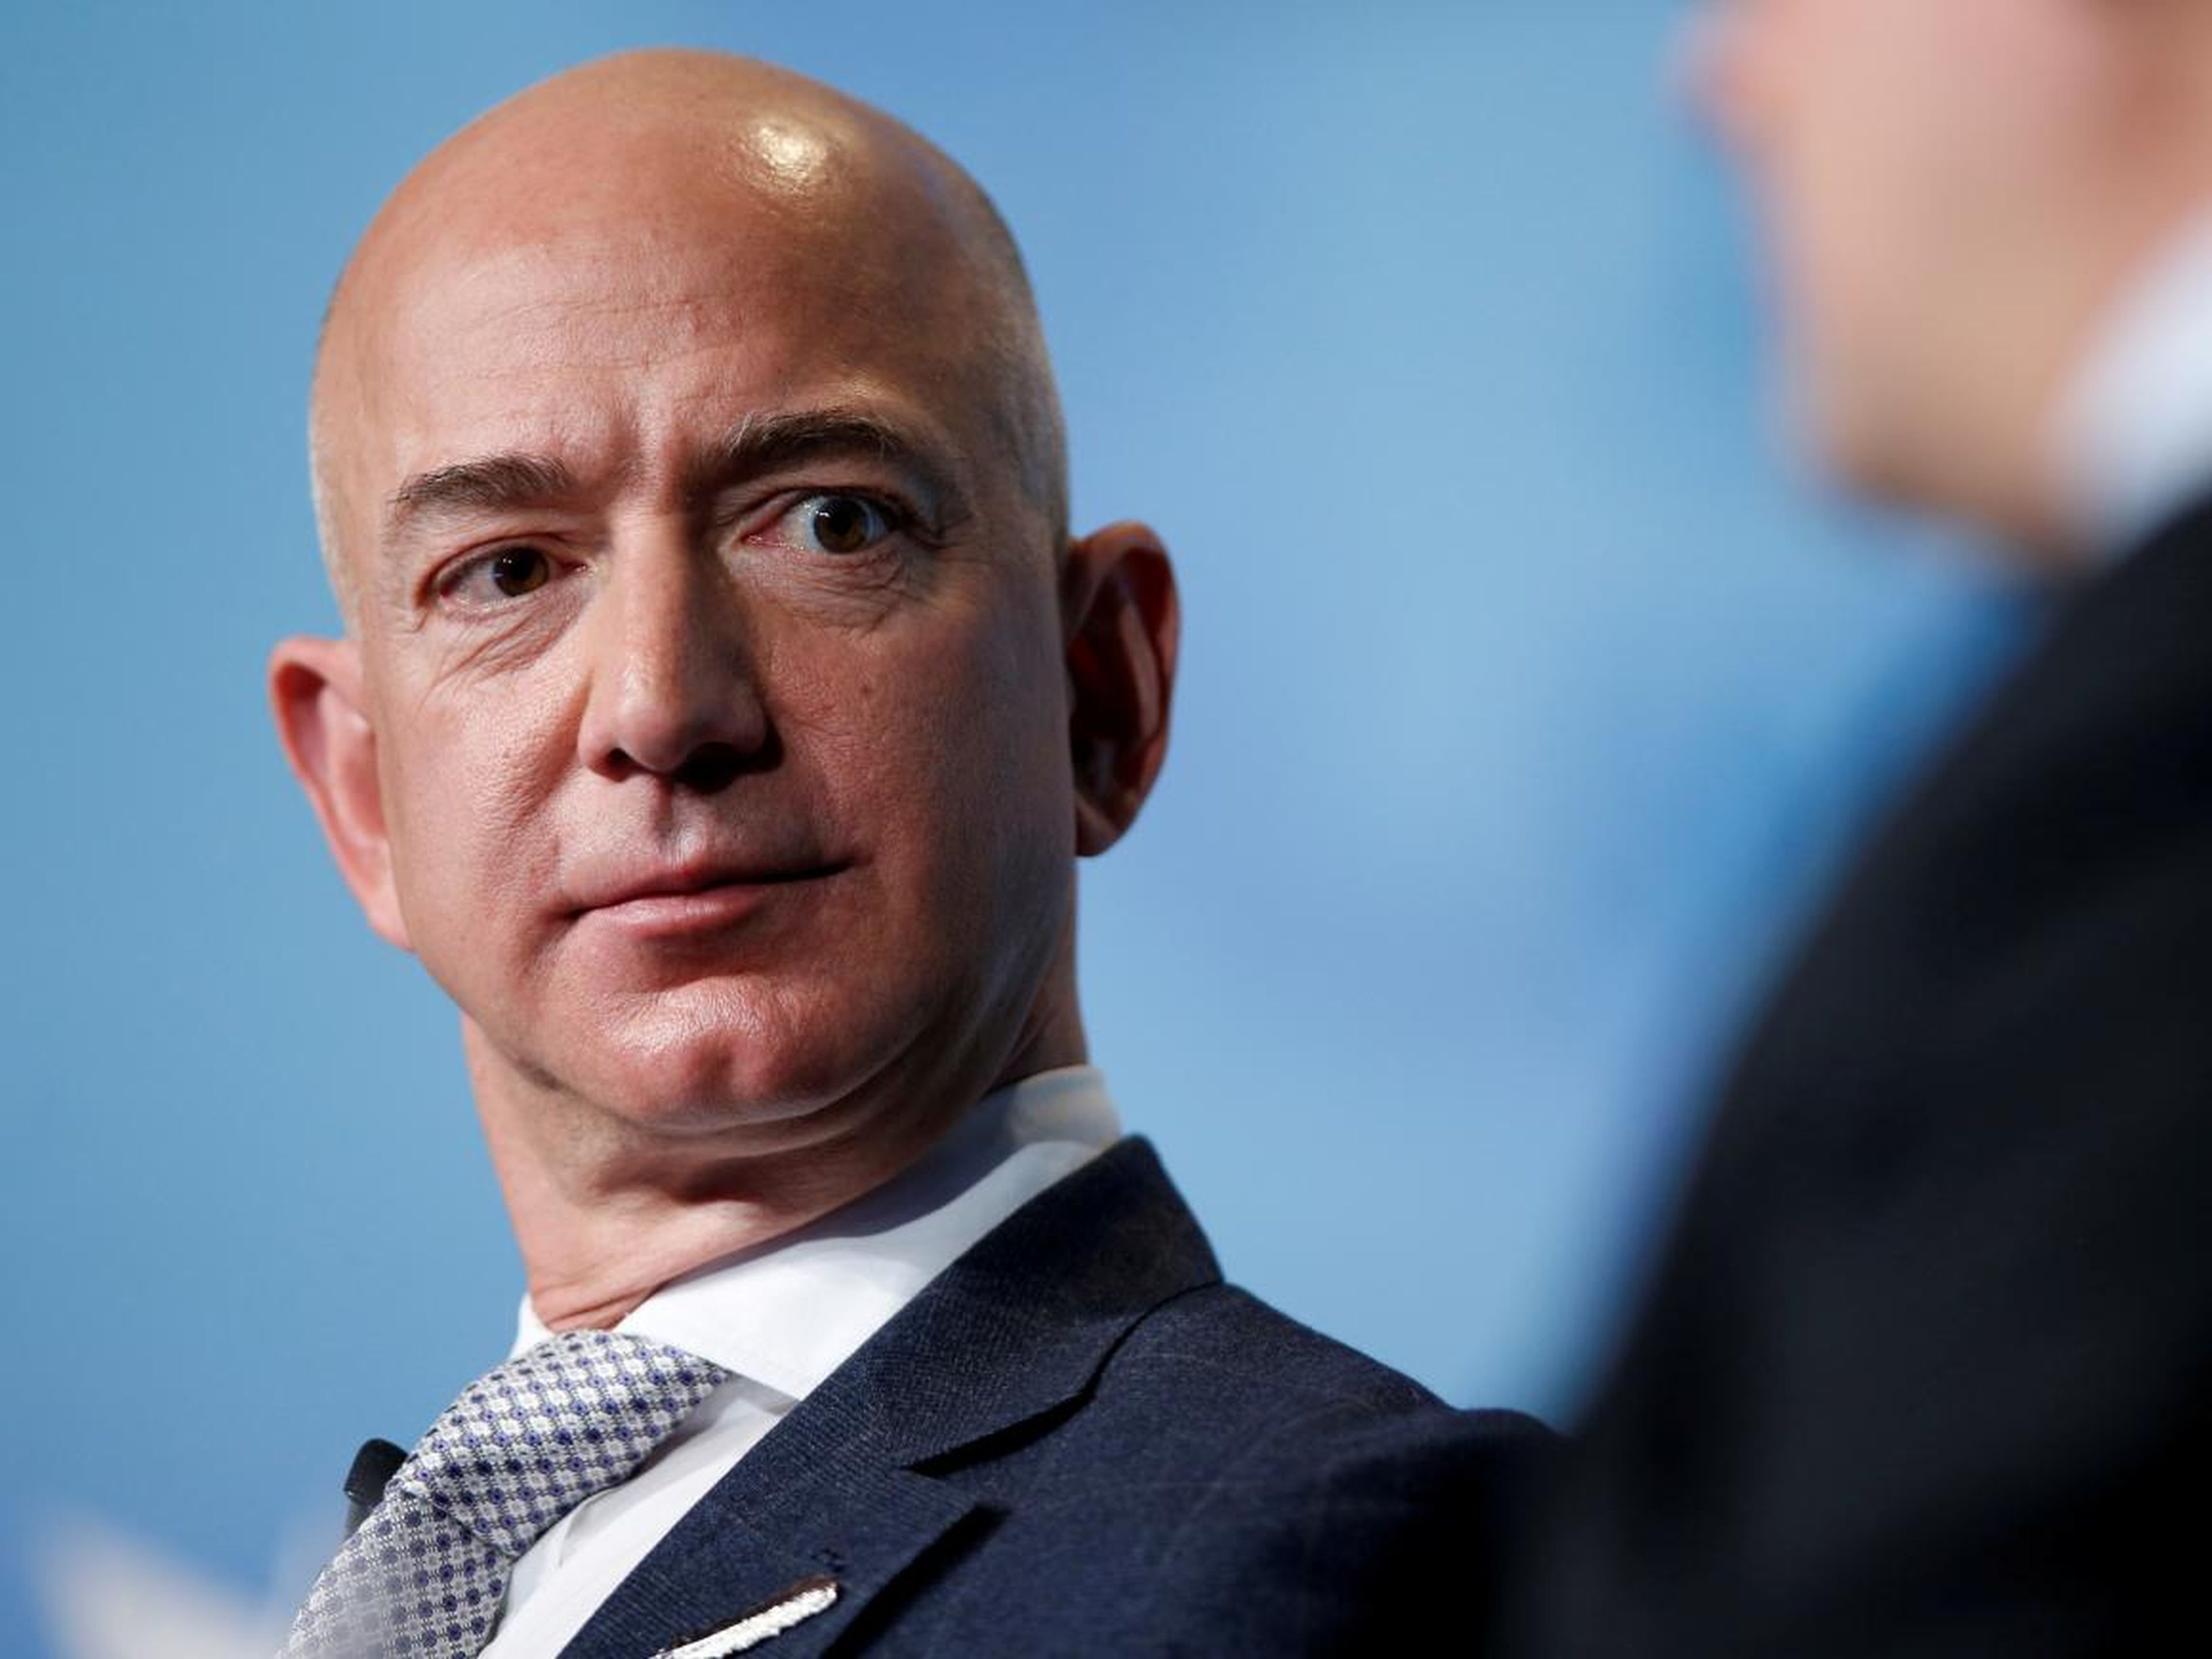 El CEO de Amazon, Jeff Bezos, habla durante un discurso a los asistentes a la conferencia SATELLITE 2017 de Access Intelligence en Washington, EE.UU.